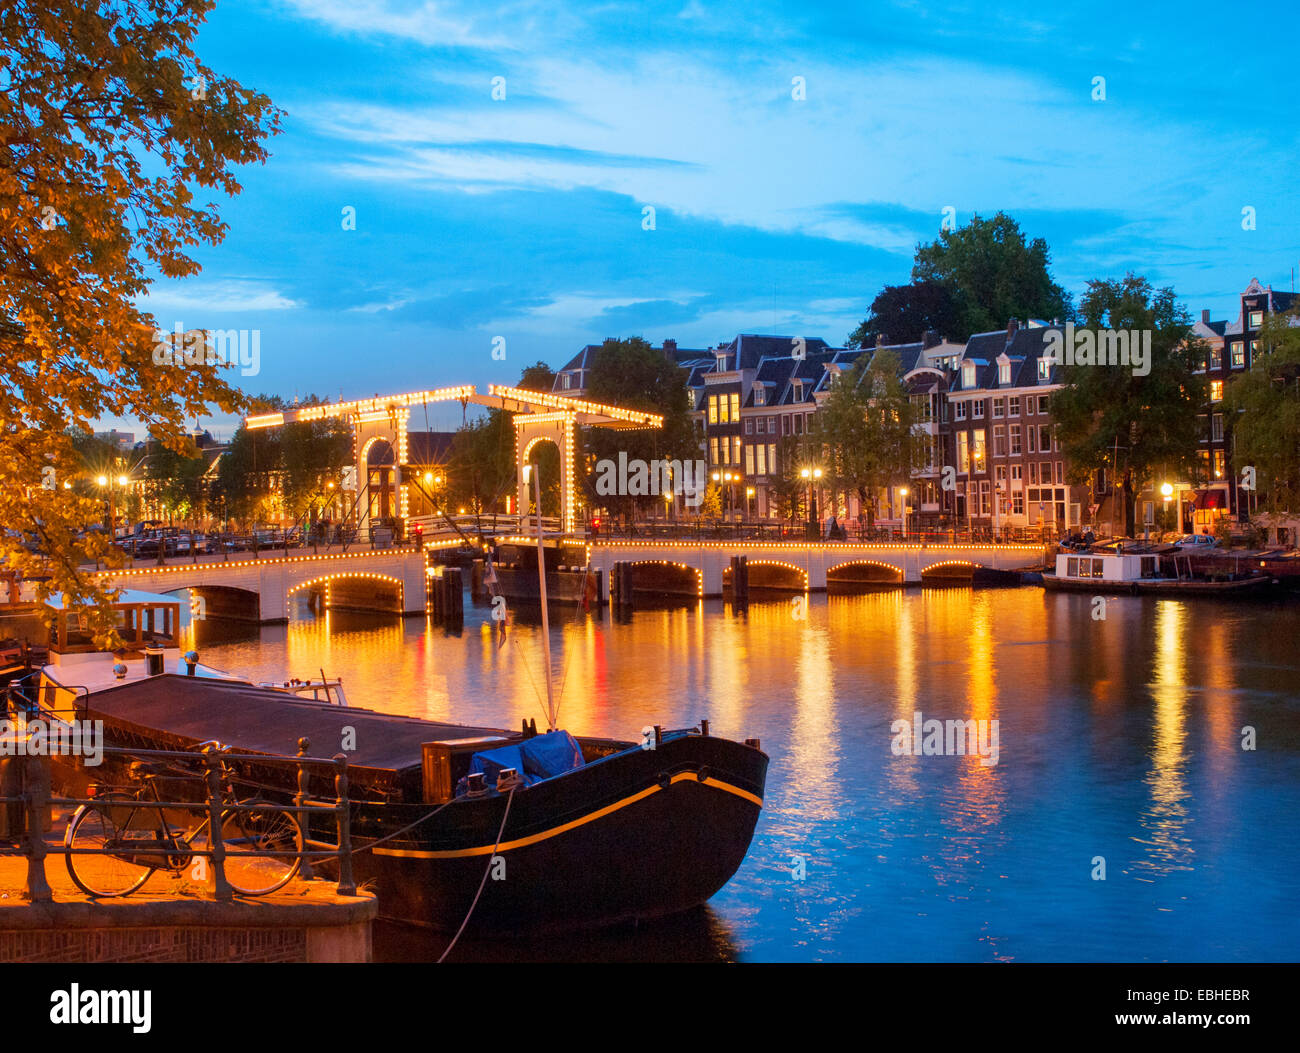 'The Skinny Bridge' illuminated at dusk, Amsterdam, Netherlands Stock Photo